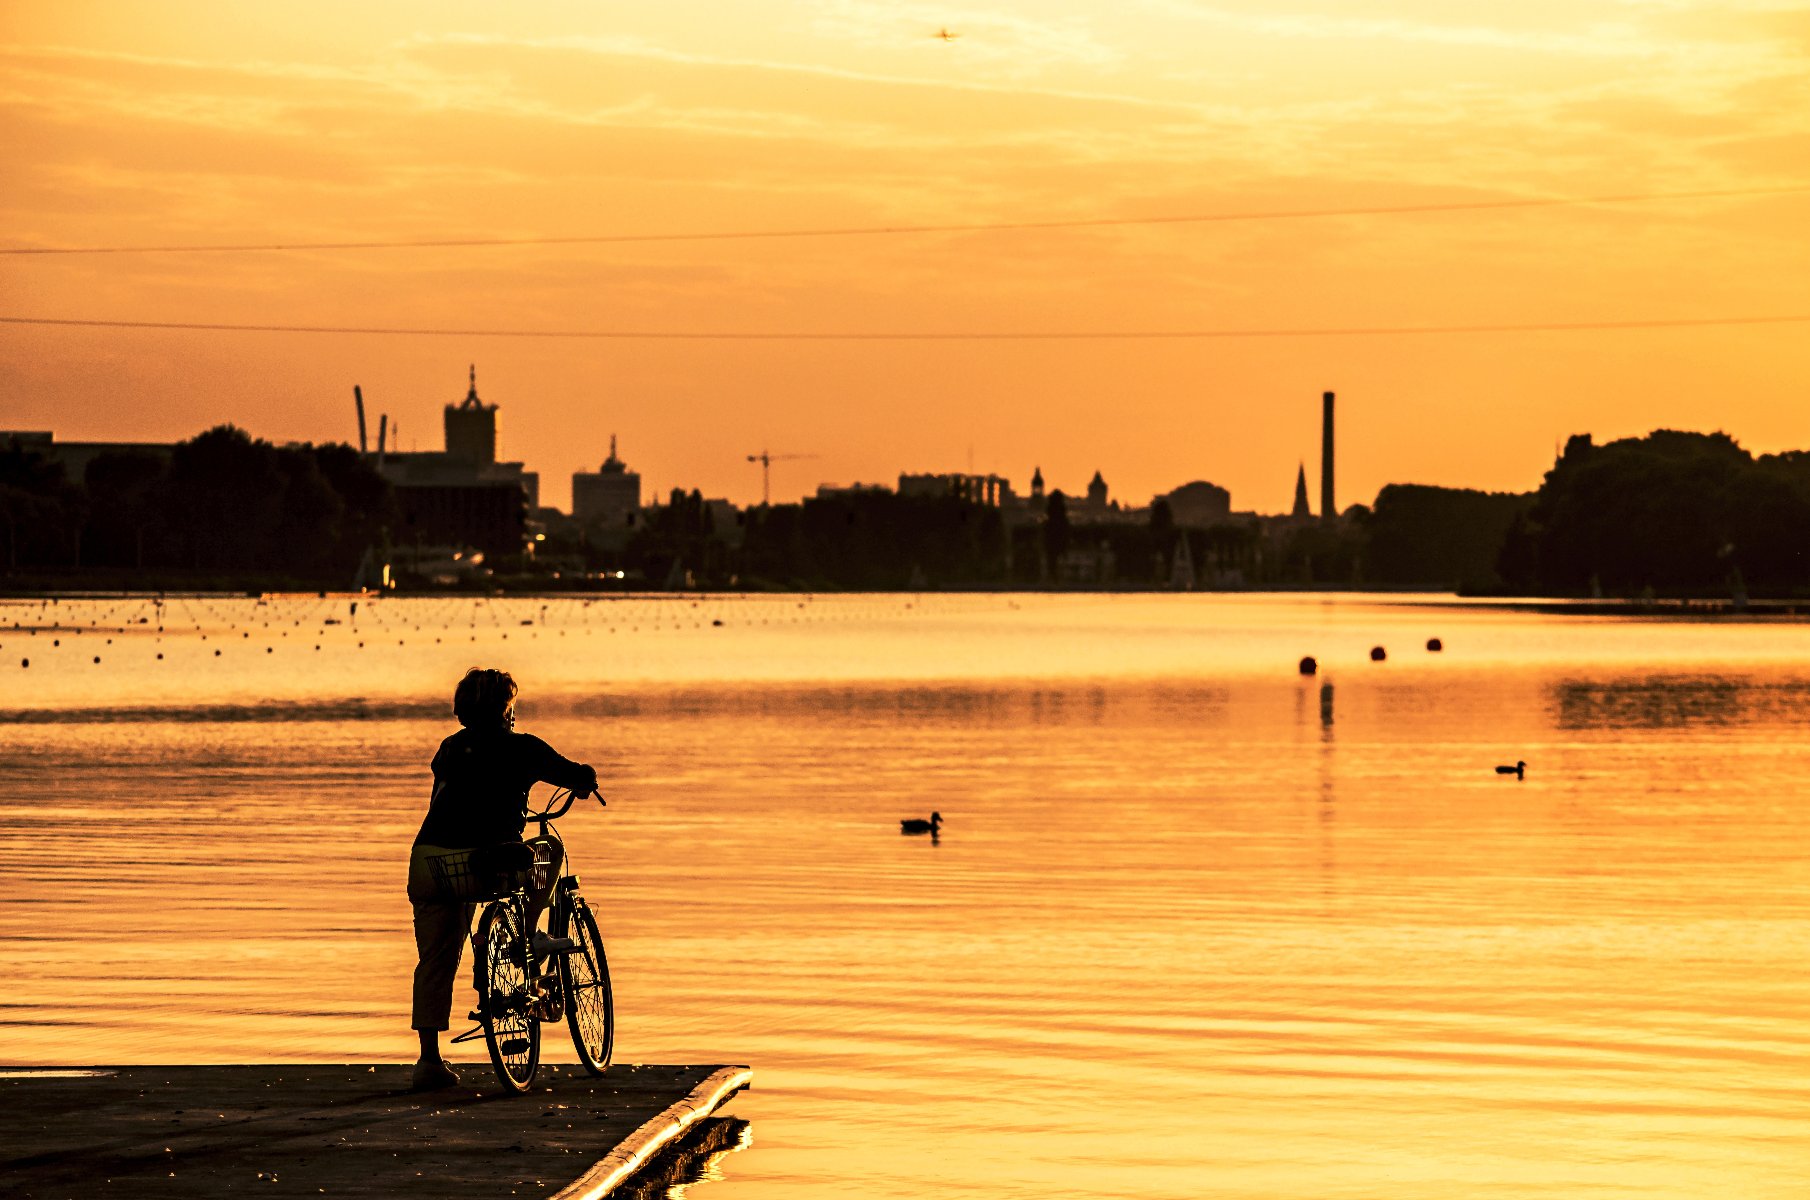 Zdjęcie przedstawia osobę stojącą na rowerze na pomoście przy jeziorze Maltańskim, patrzącą w kierunku zachodzącego słońca. - grafika artykułu